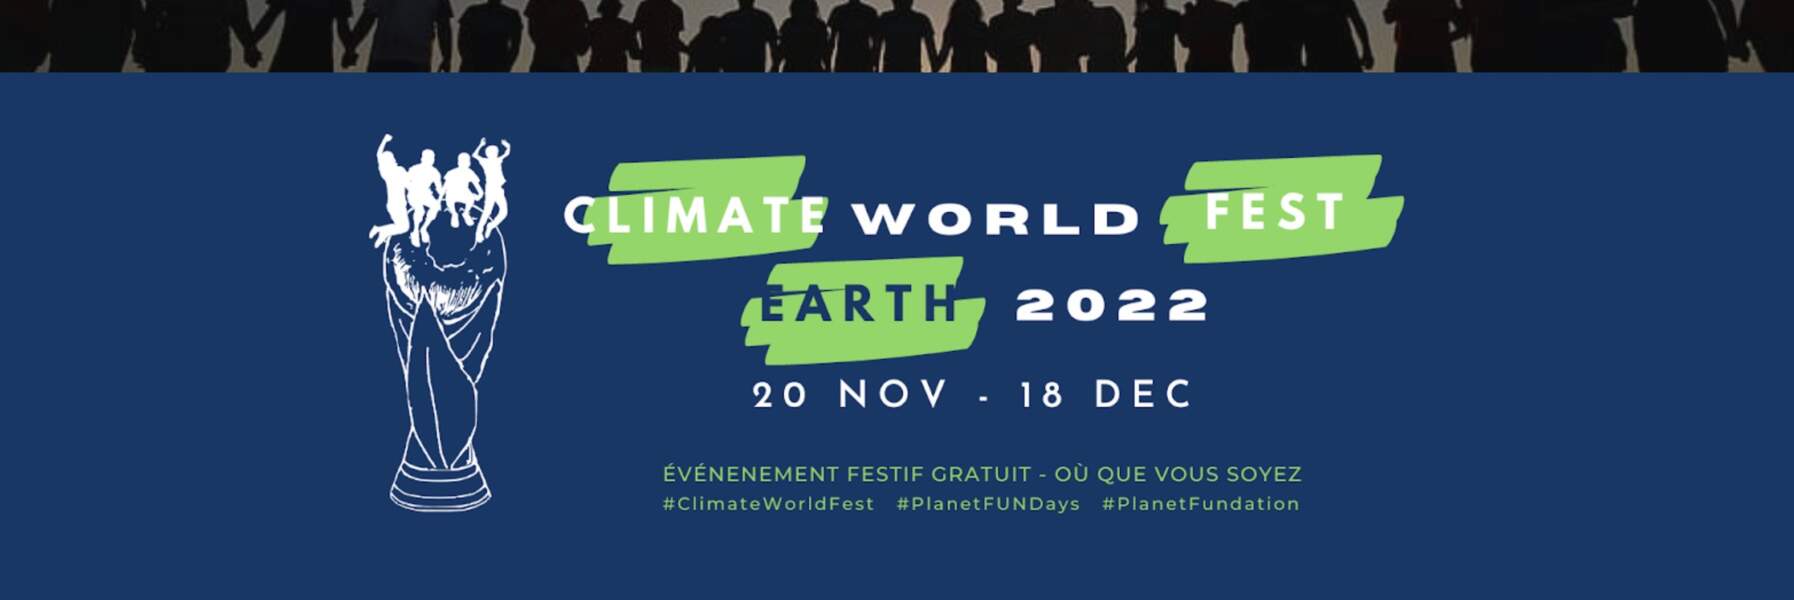 Prendre part au Climate World Fest 